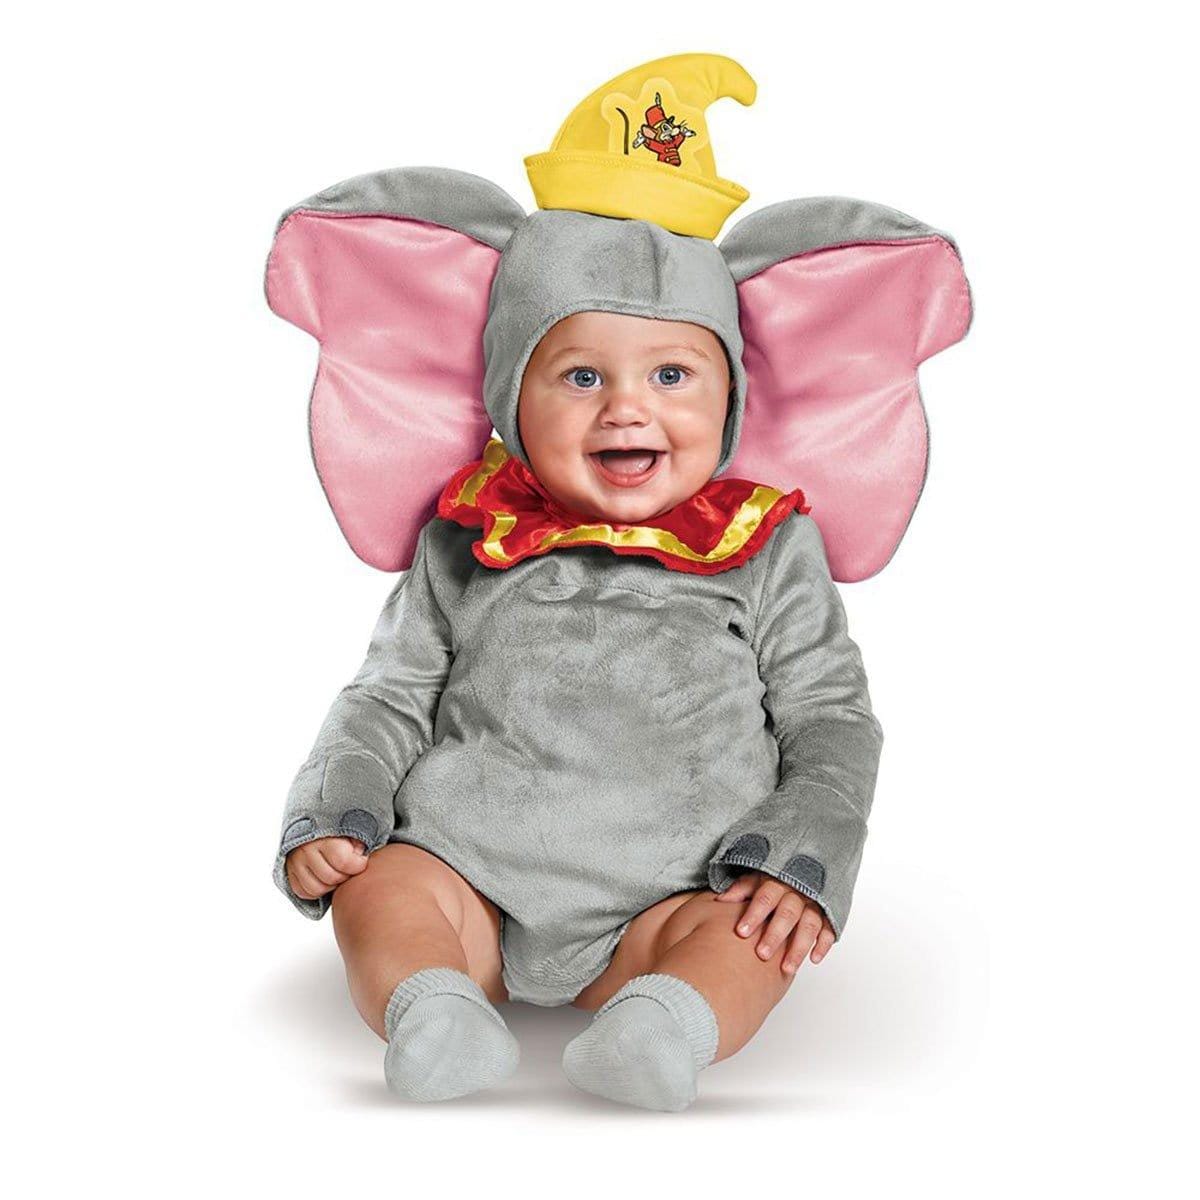 Costume classique de Dumbo de Disney pour bébés